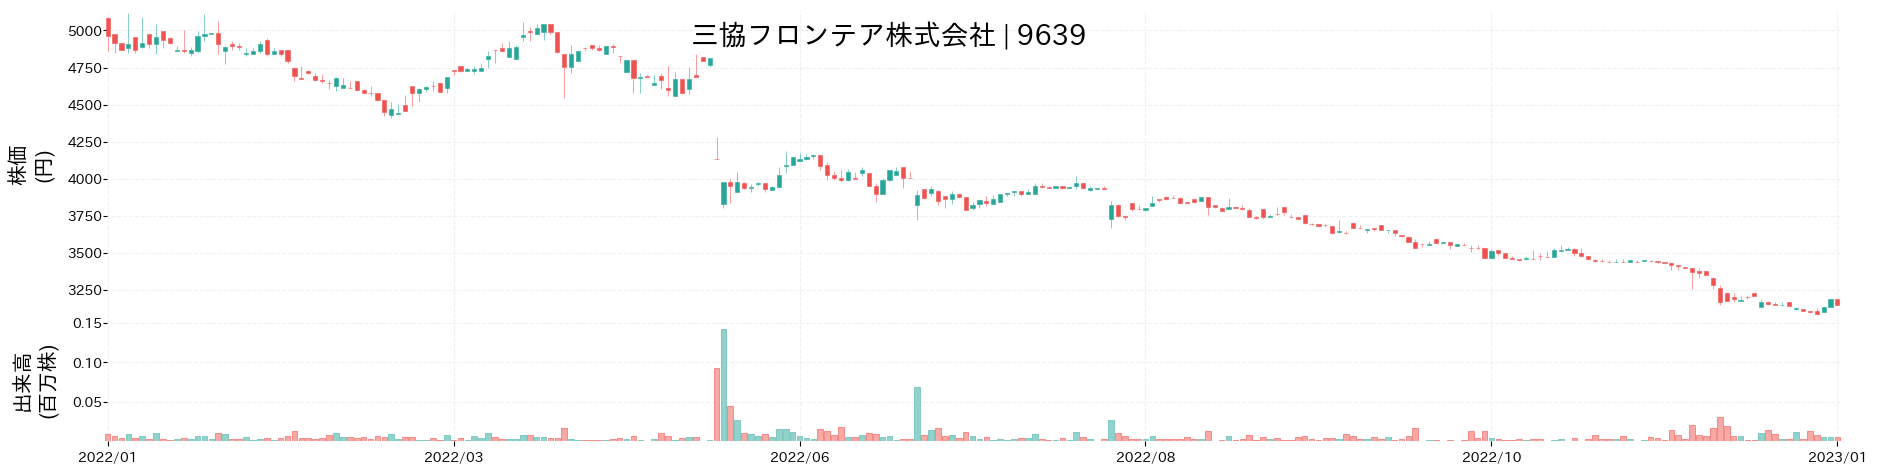 三協フロンテアの株価推移(2022)